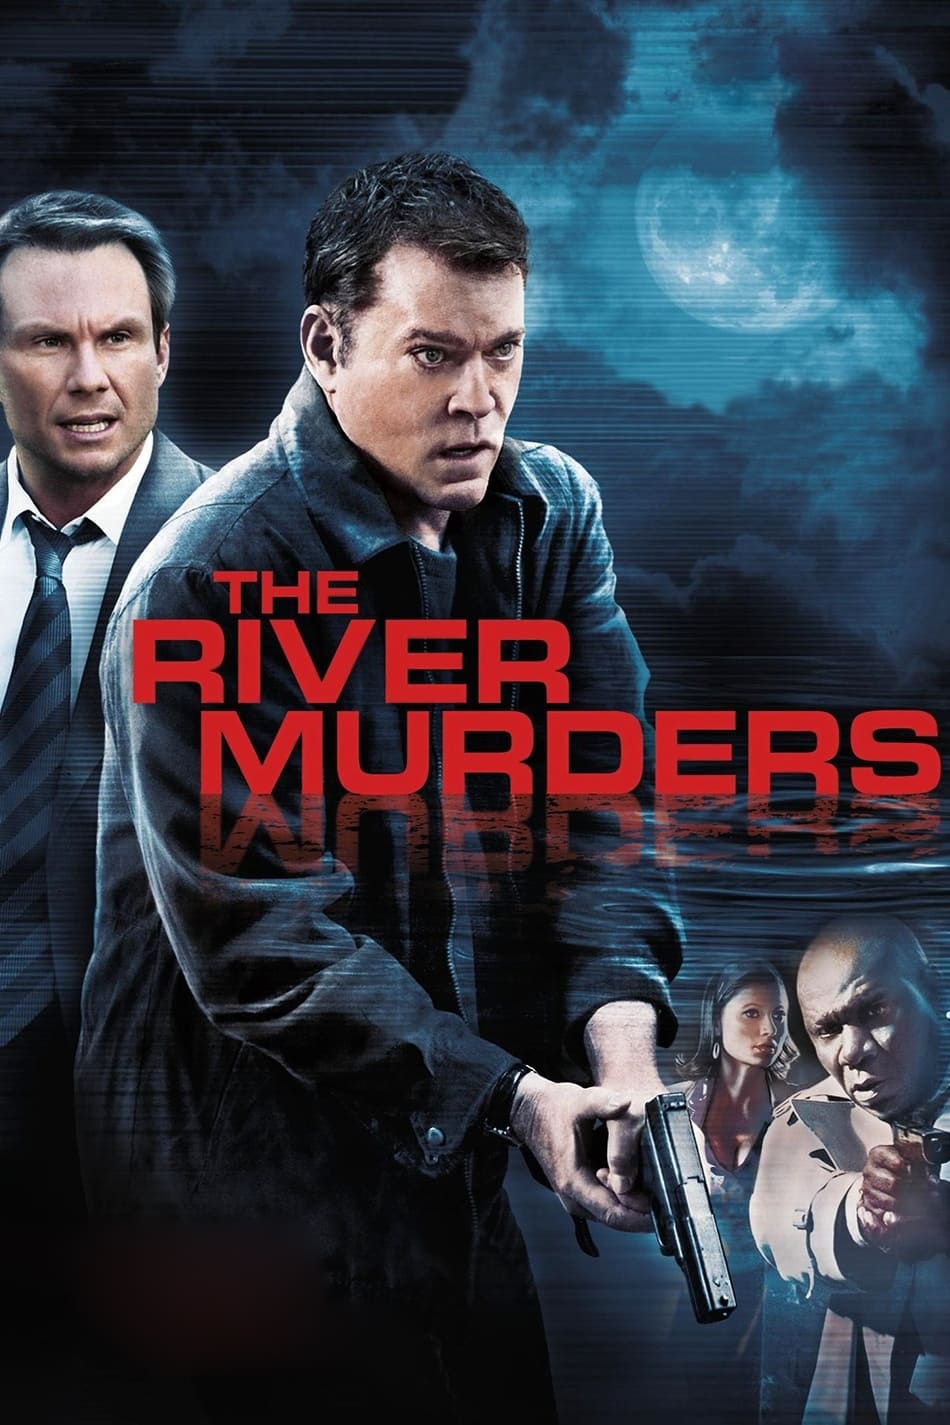 The River Murders - Blutige Rache (2011)